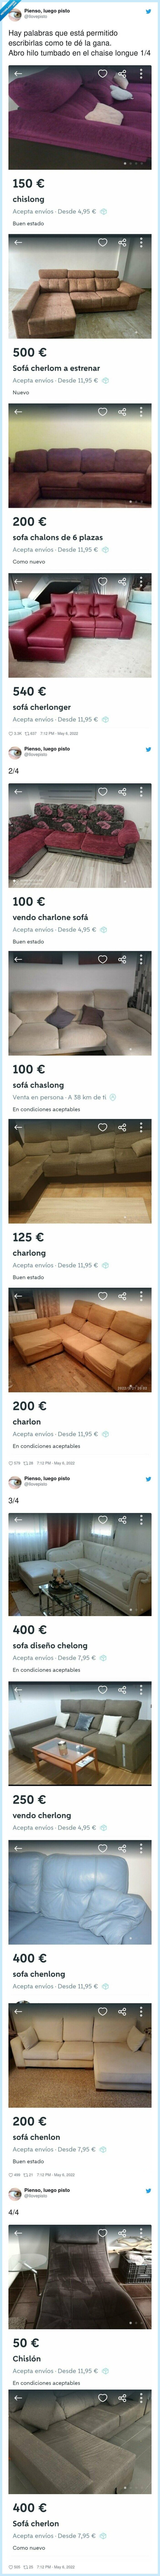 chaise longue,ortografía,venta,wallapop